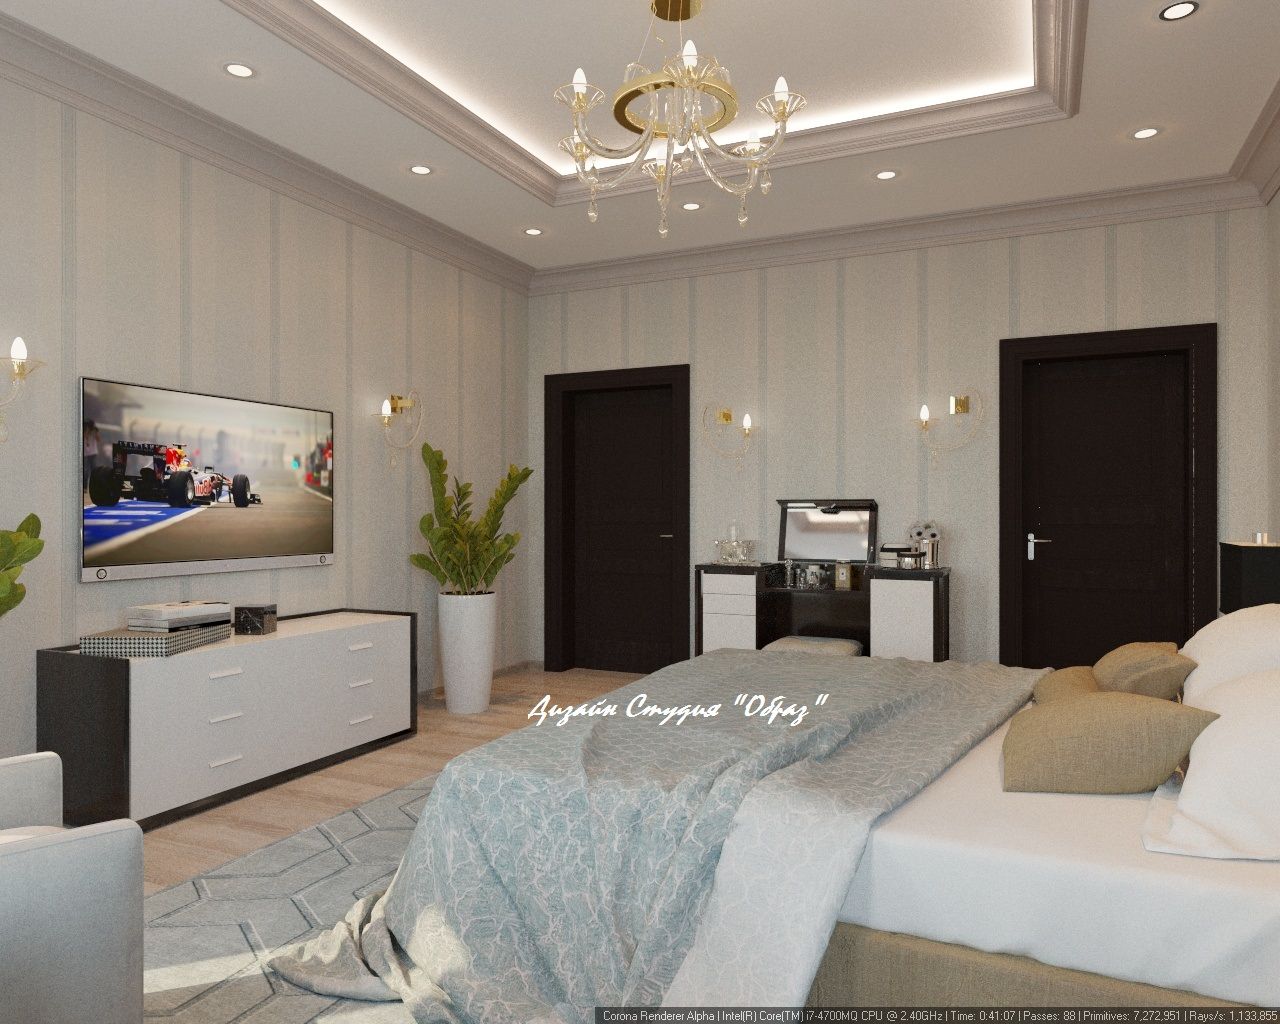 Элегантная спальня в светлых тонах, Дизайн Студия "Образ" Дизайн Студия 'Образ' Bedroom